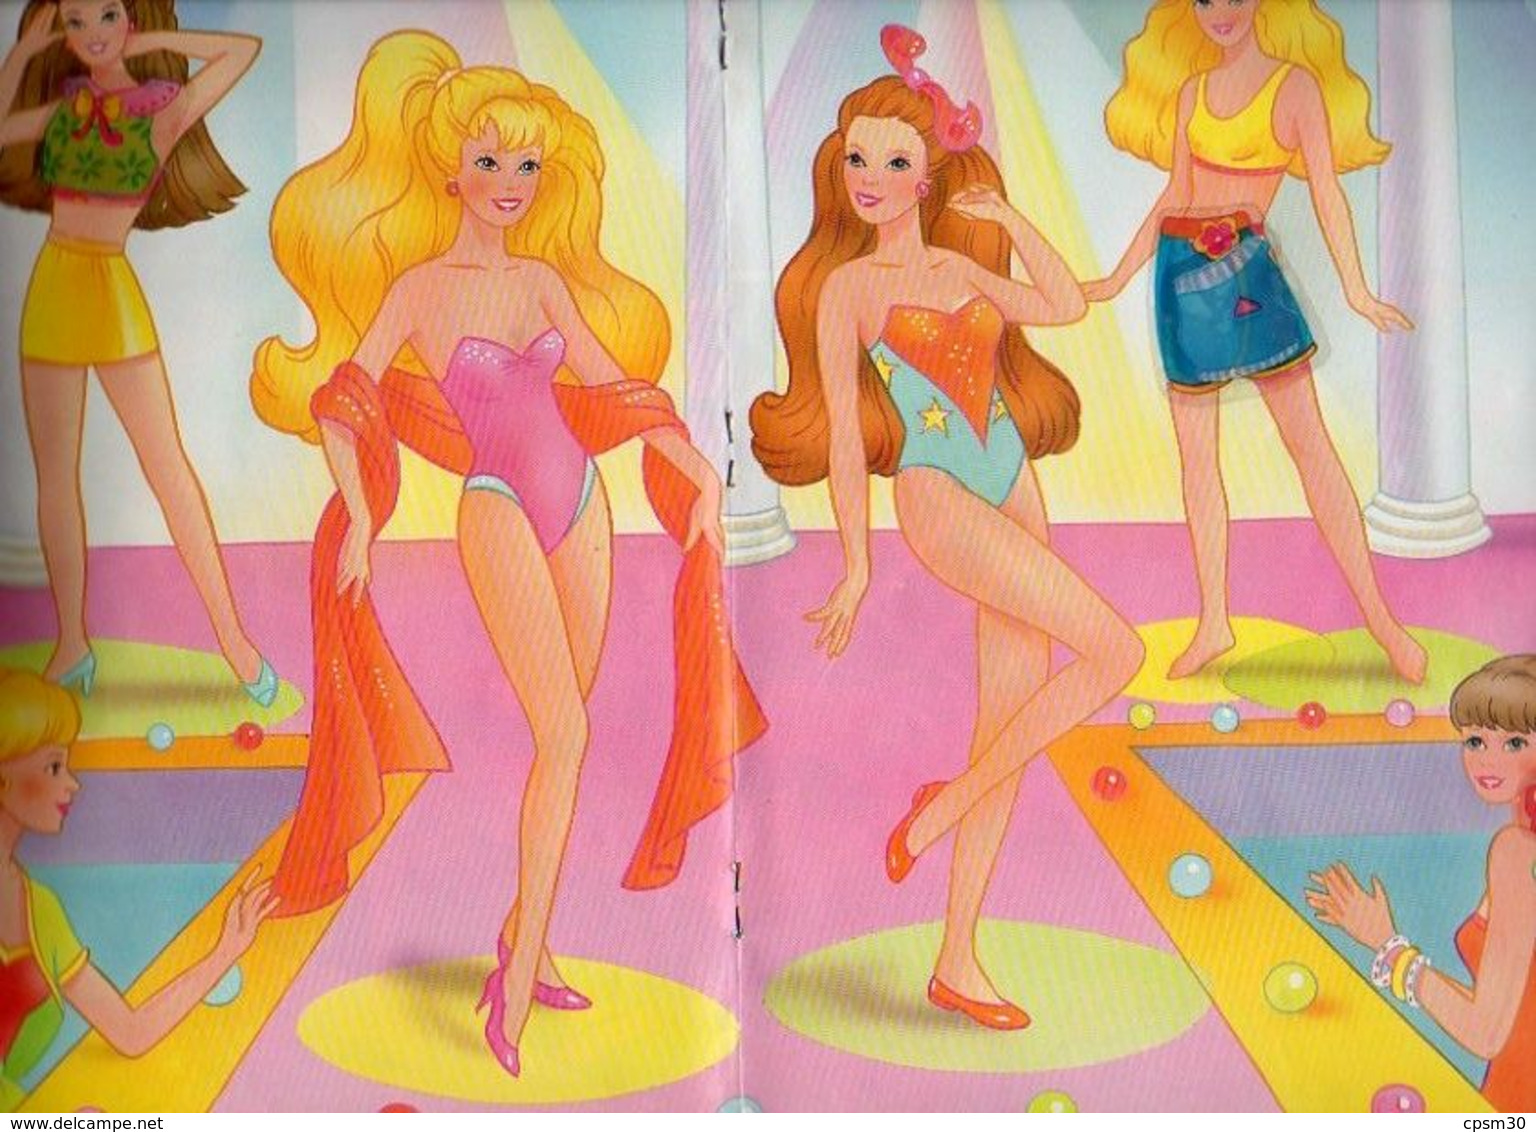 Album Chromo - 041 - Panini - Barbie Style - 1995 - 56 Pages (plus Un Deuxième Offert) - Albumes & Catálogos